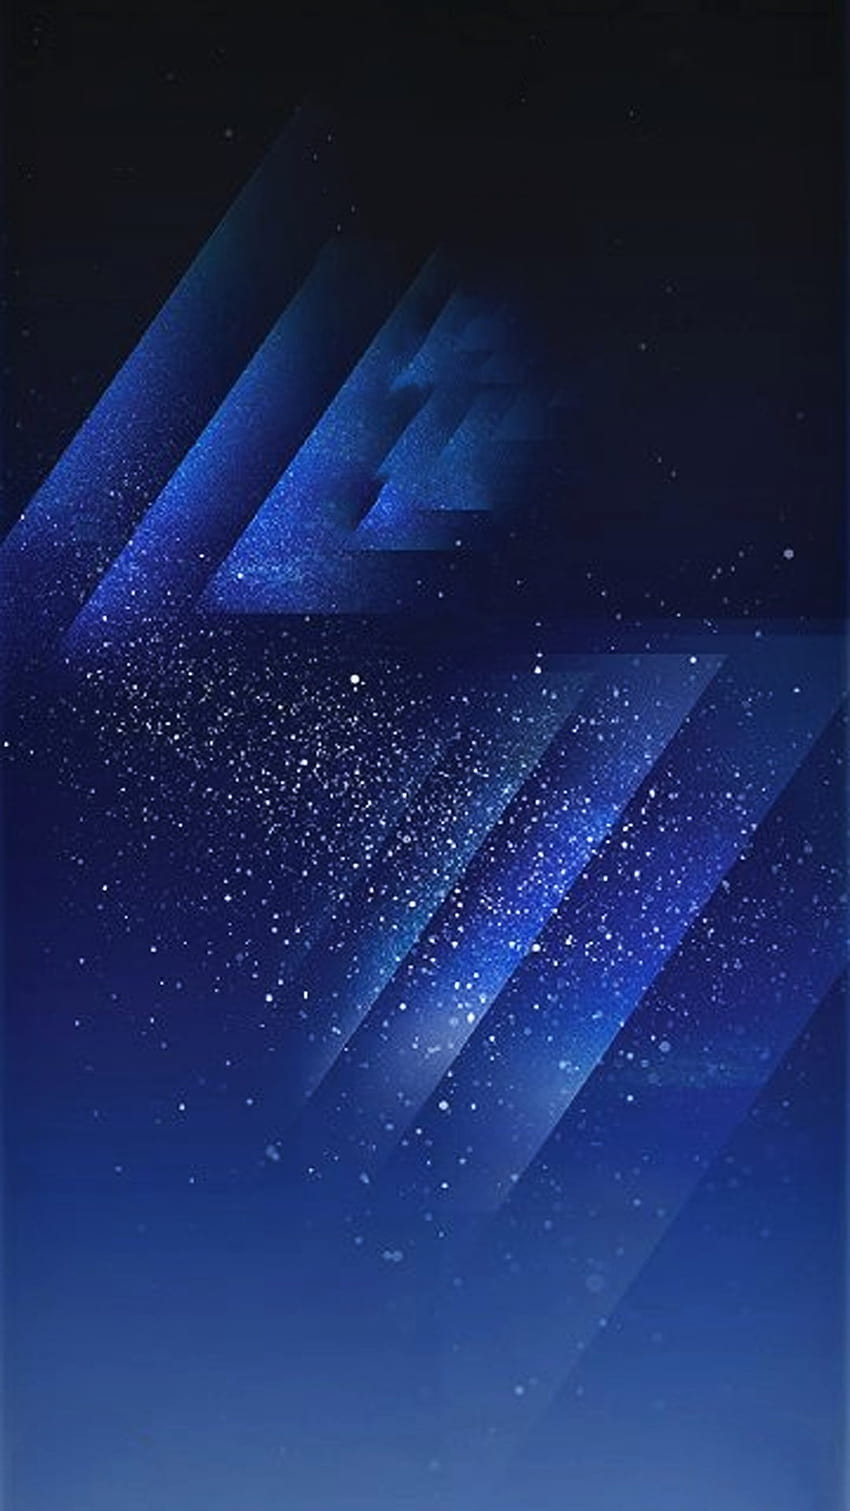 Màn hình khóa của Samsung Note 8 là sự kết hợp giữa tính năng và thẩm mỹ, mang lại cho người dùng nét độc đáo và đẳng cấp. Khám phá ngay những giao diện khác nhau và lựa chọn cho mình thiết kế đẹp nhất, phù hợp với gu thẩm mỹ của bản thân.